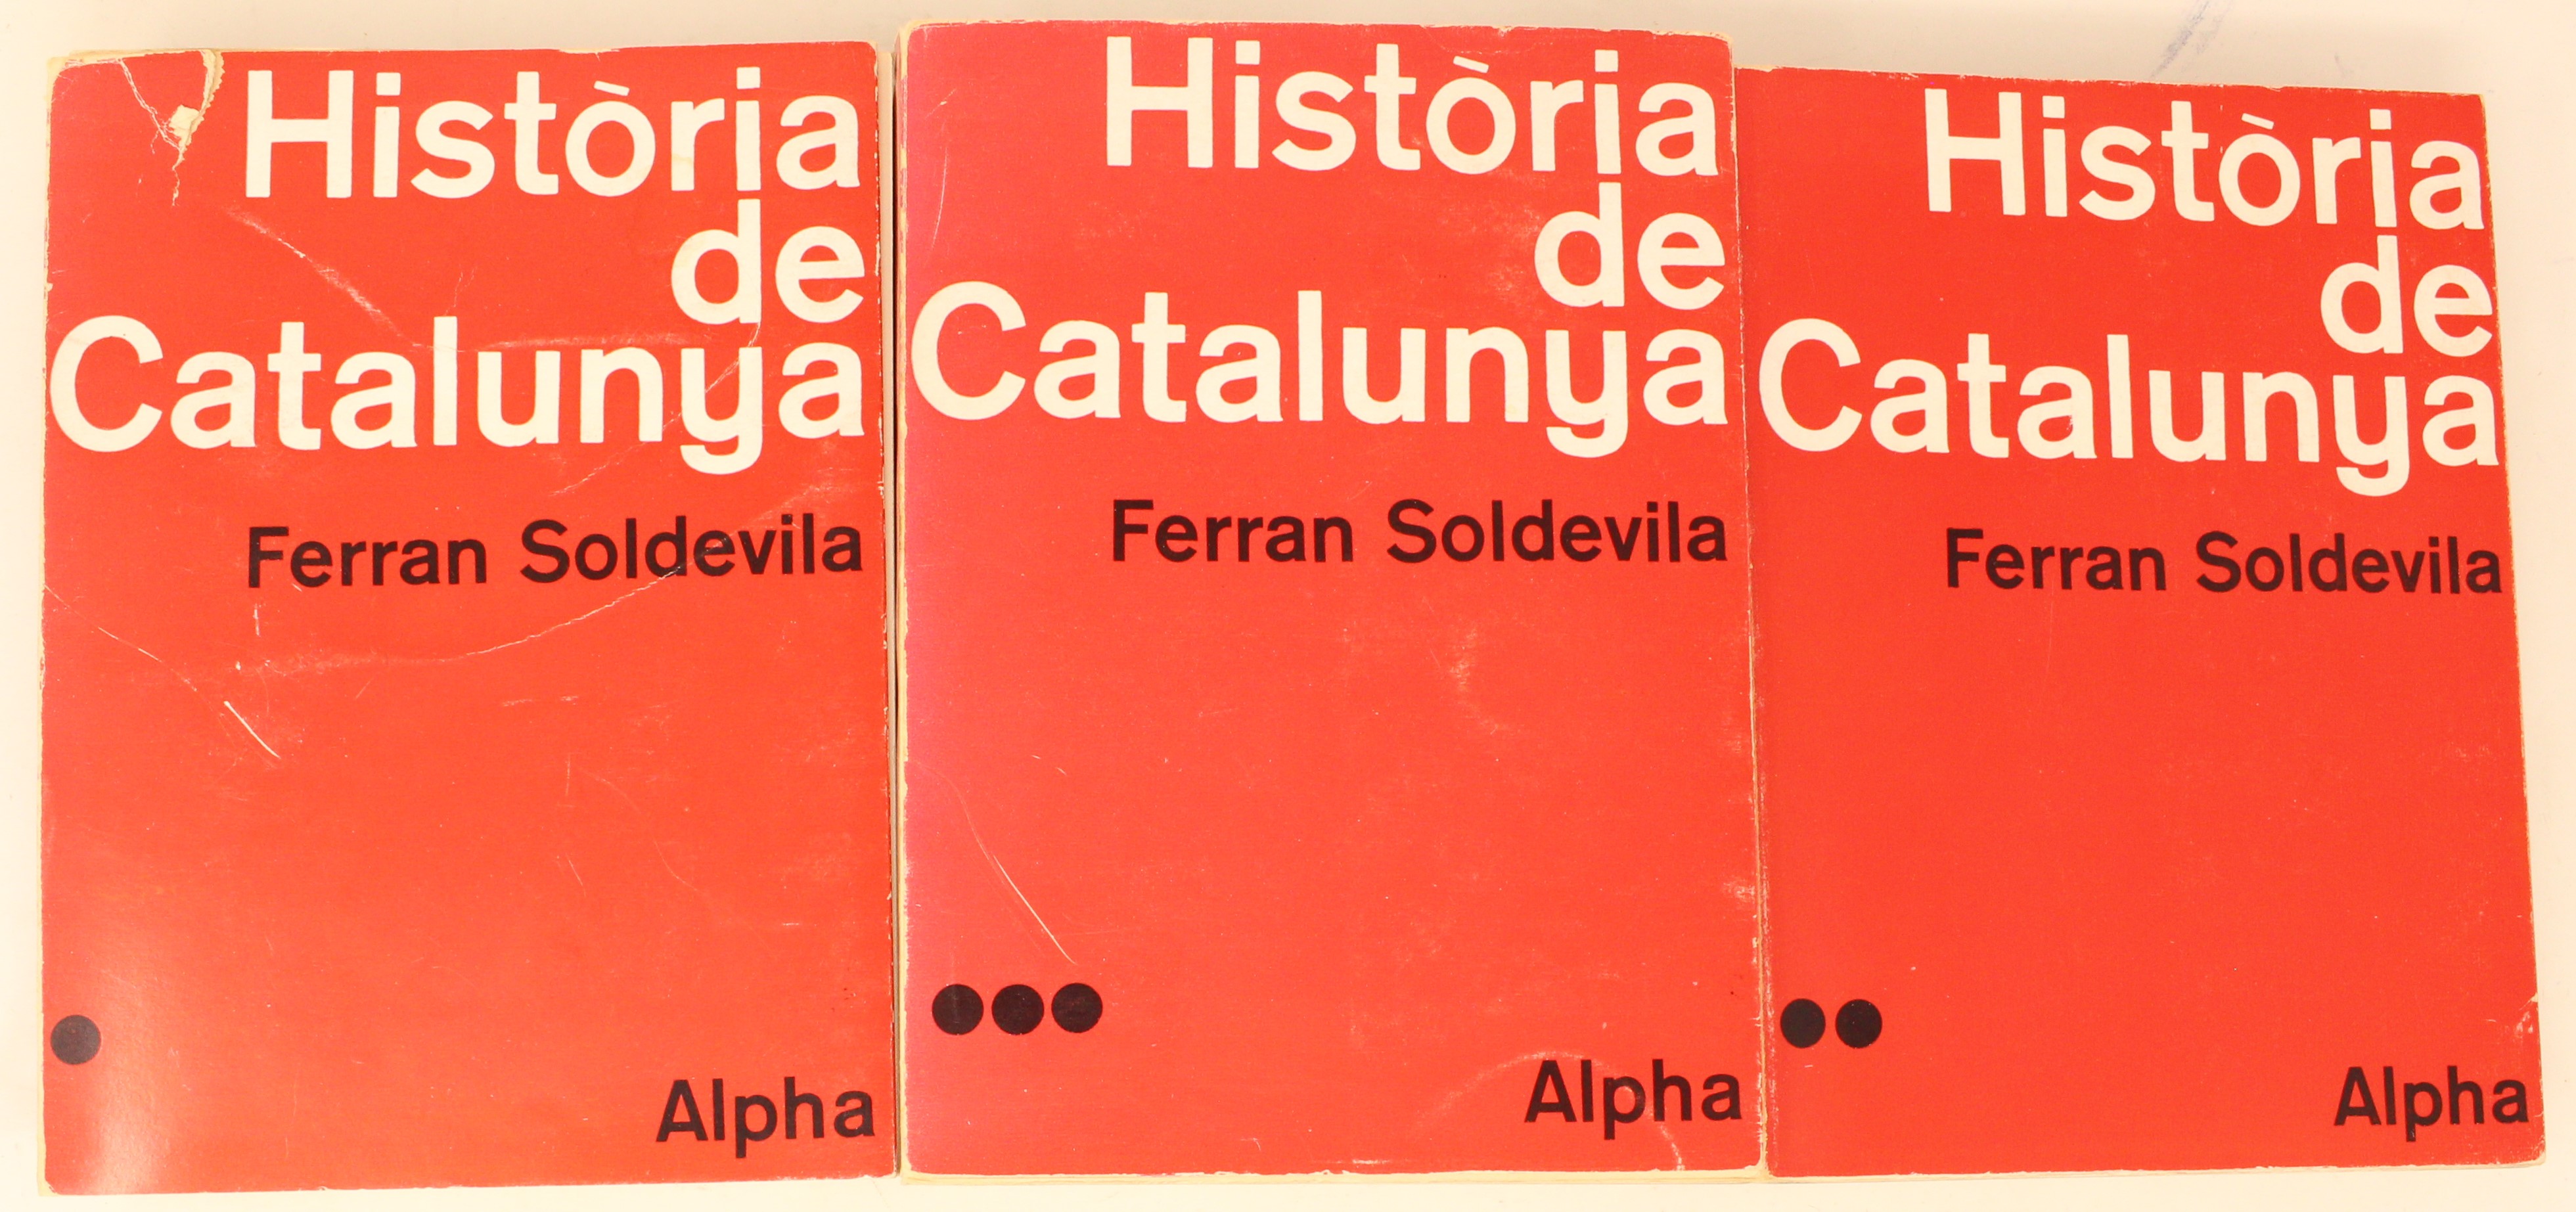 HISTORIA DE CATALUNYA